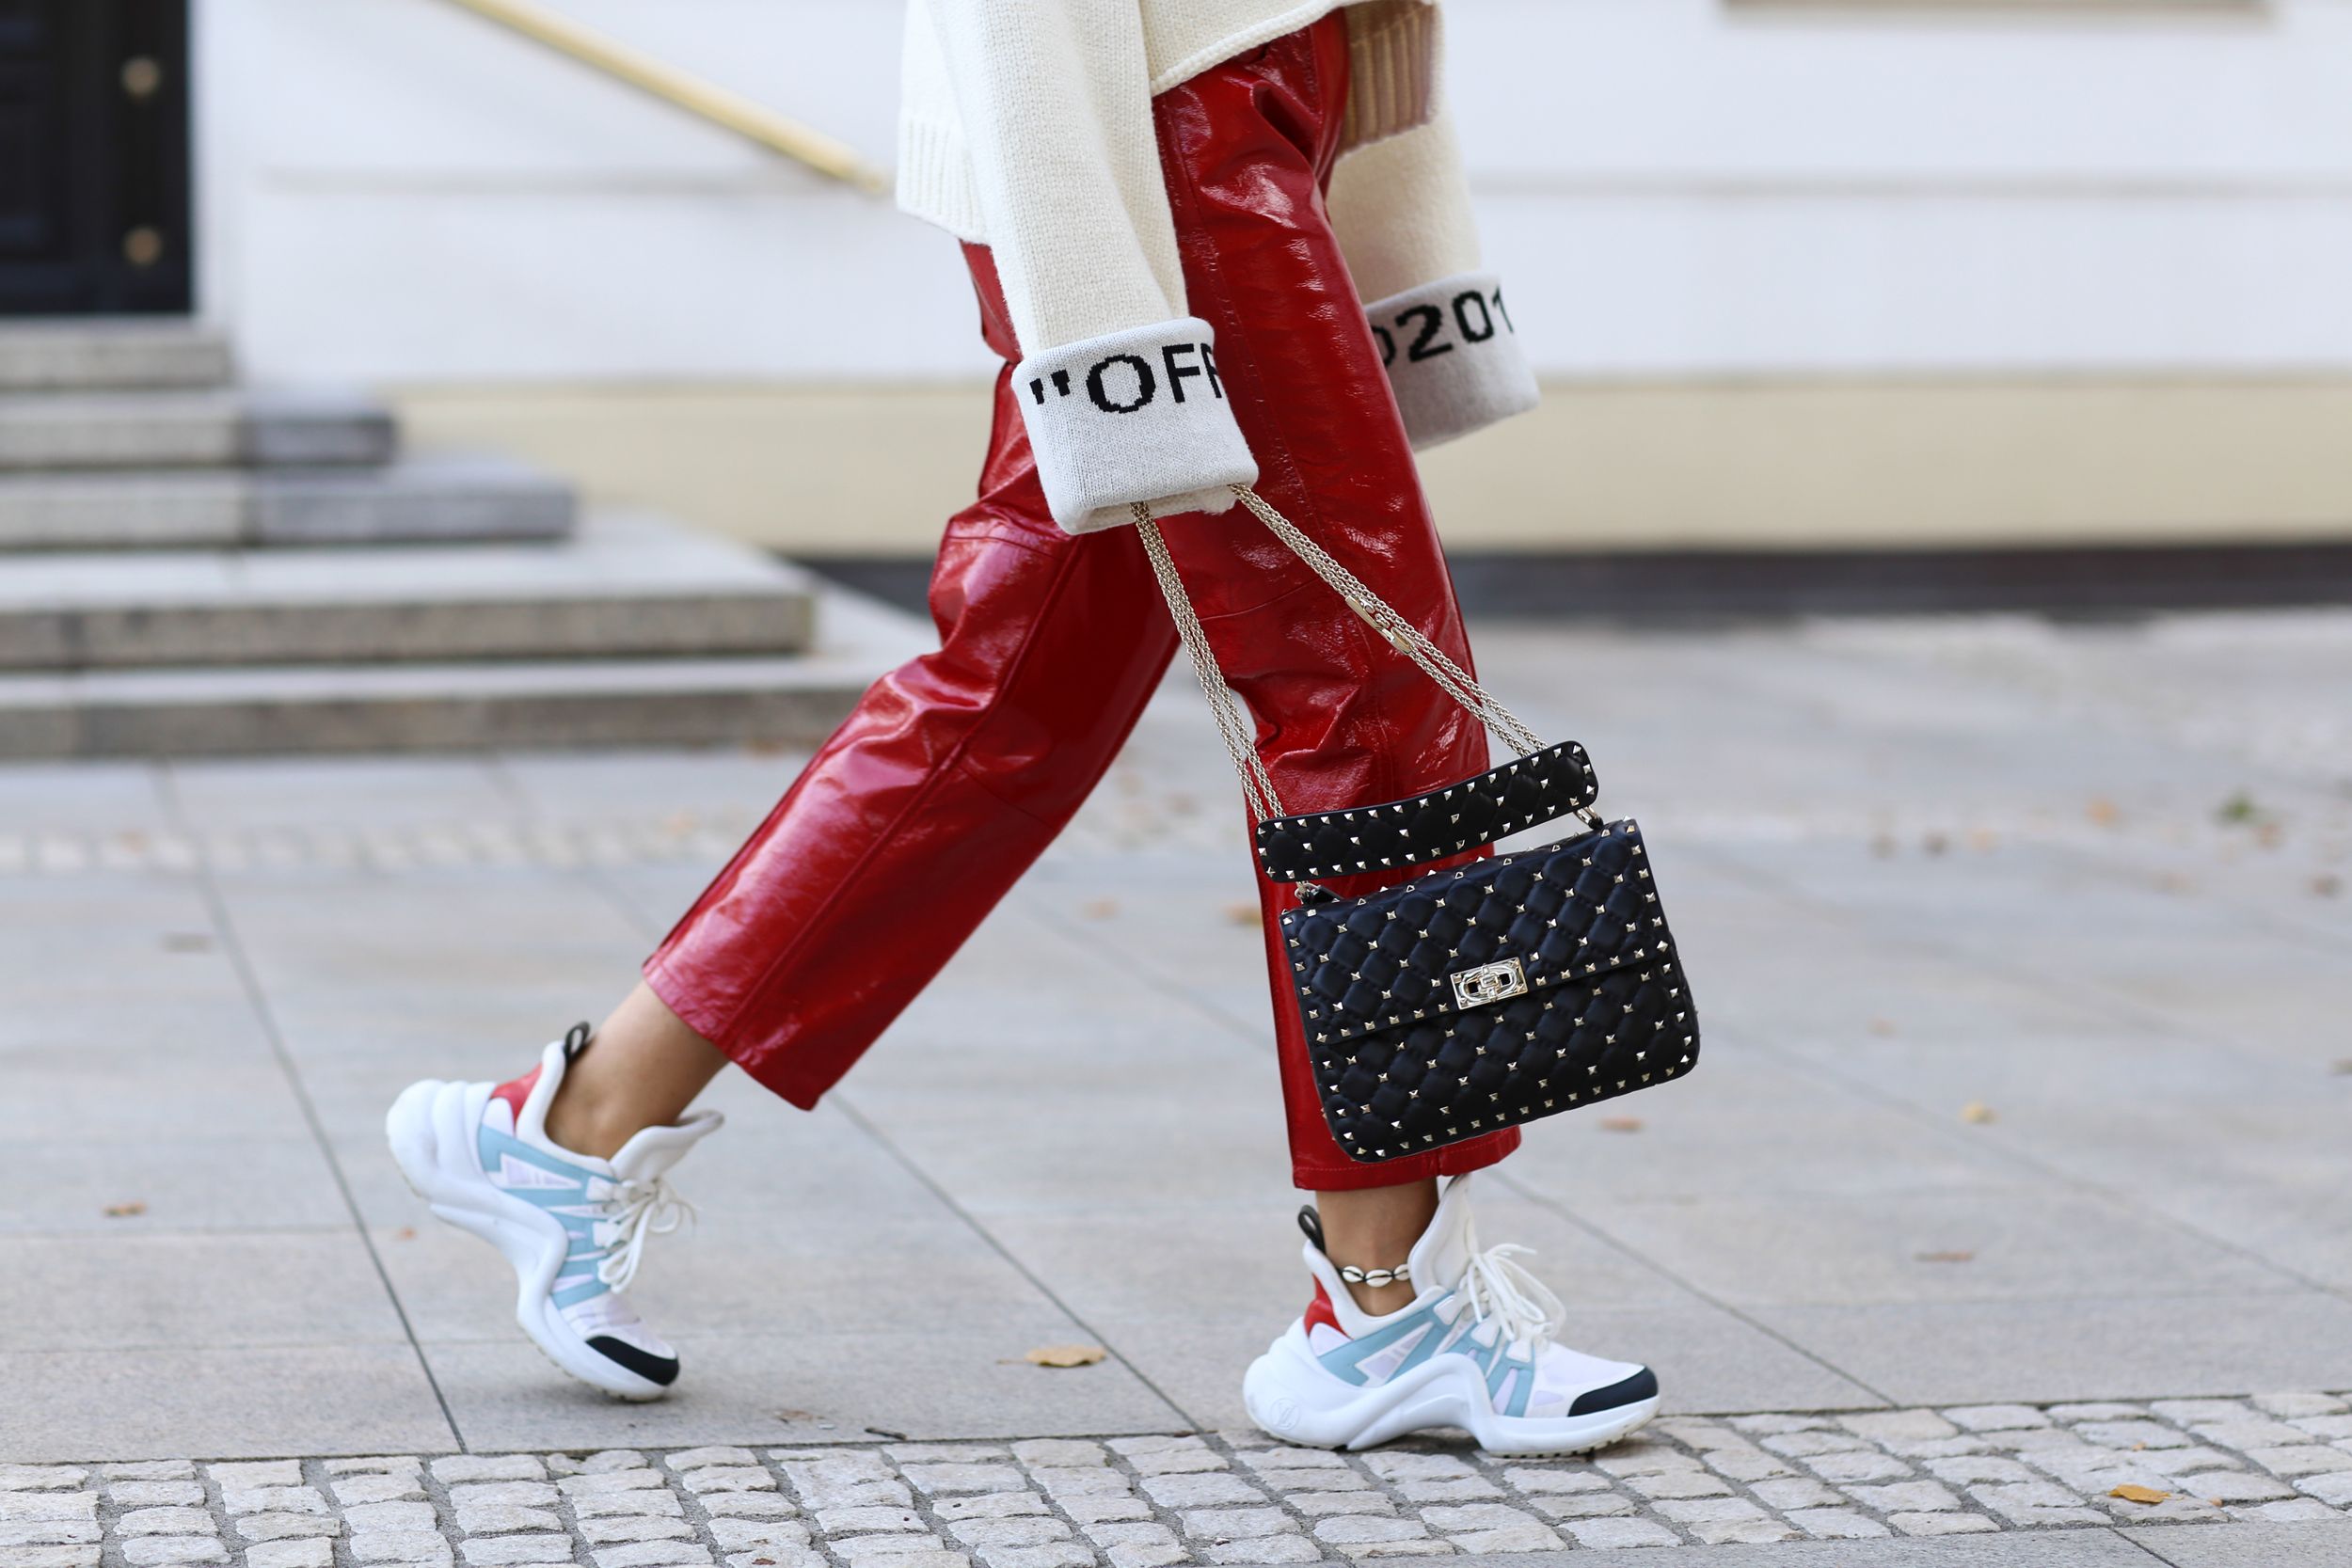 Louis Vuitton Mujer Zapatillas Casual Blanco Alta Calidad Nuevo